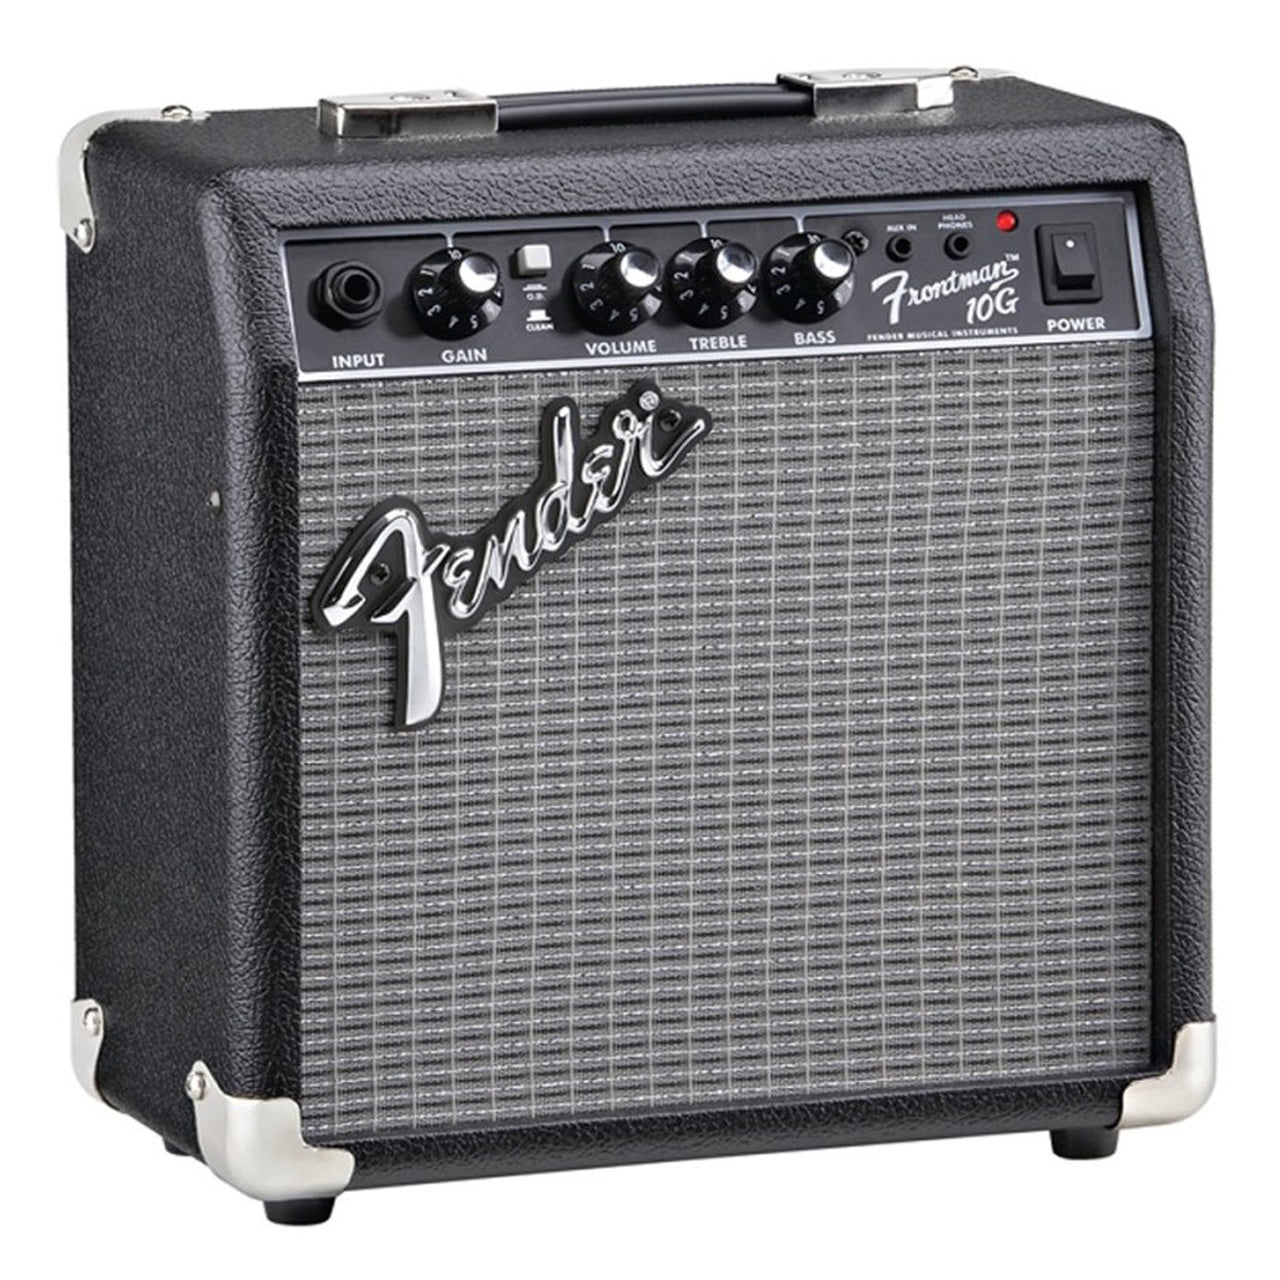 Amplificador Fender Frontman 10g Para Guitarra 2311000000